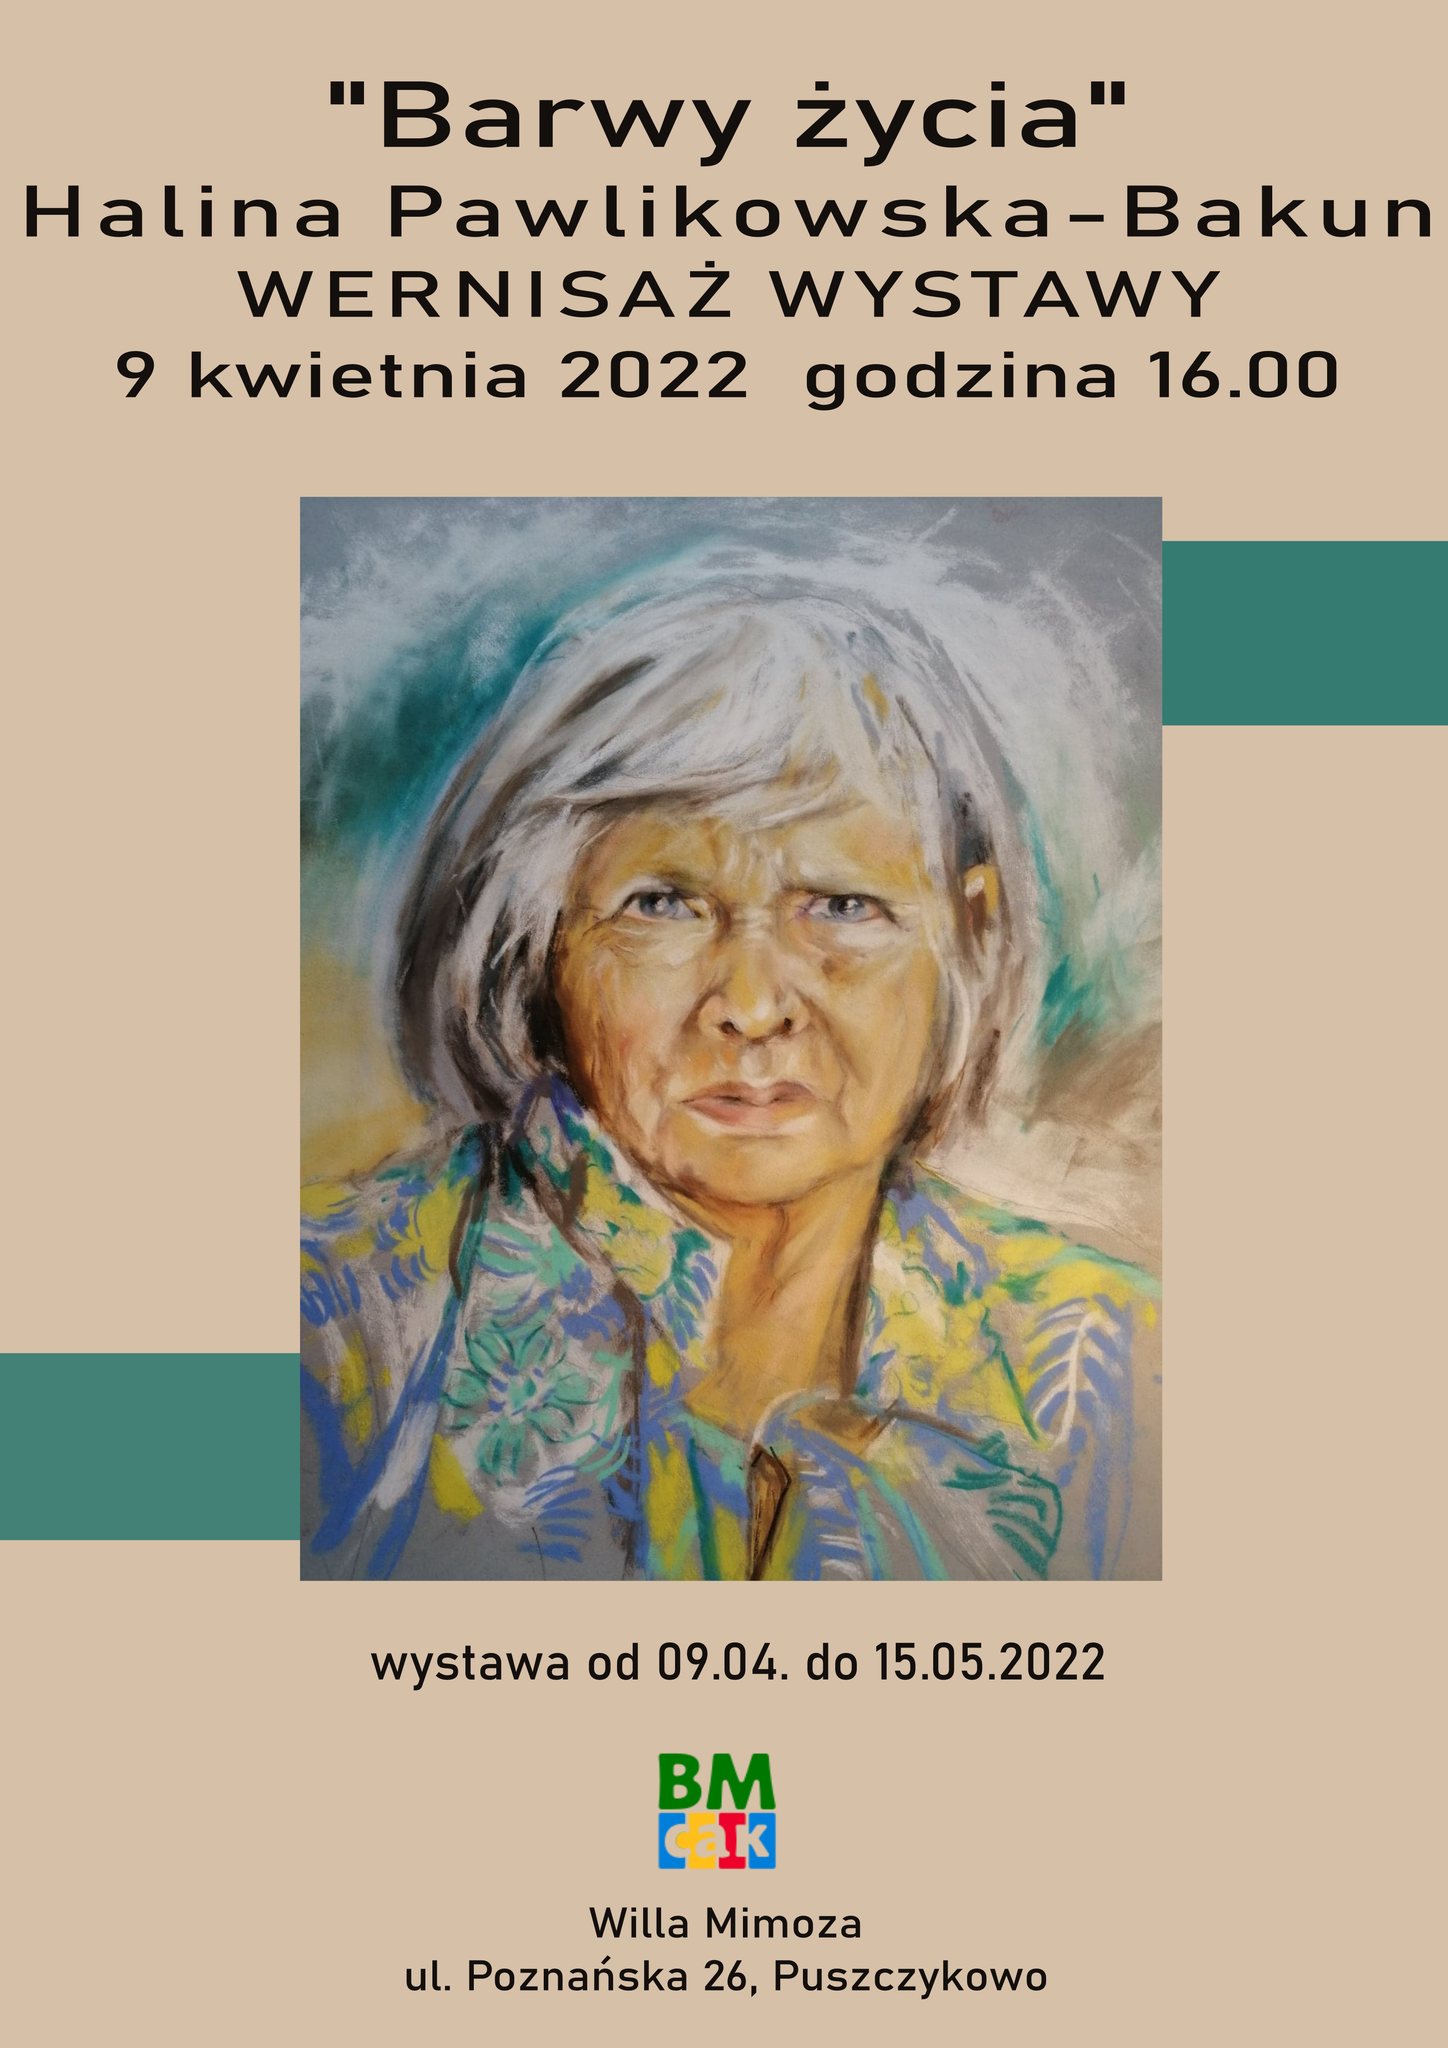 Zapraszamy na wernisaż wystawy "Barwy życia" autorstwa Haliny Pawlikowskiej-Bakun.